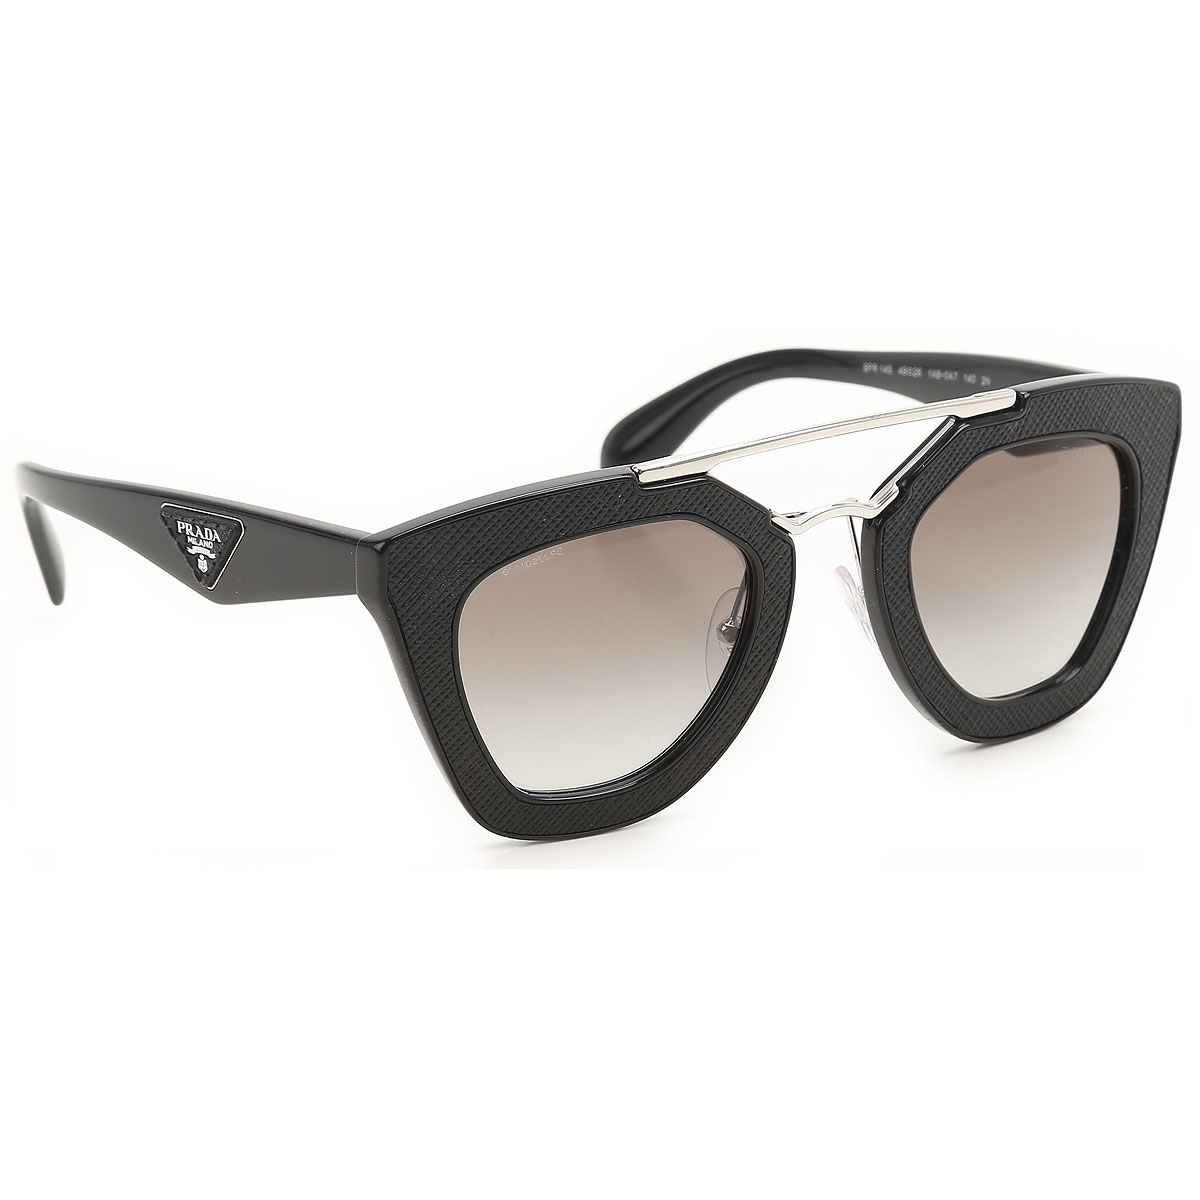 Sunglasses Prada, Style code: spr14s-1ab-0a7